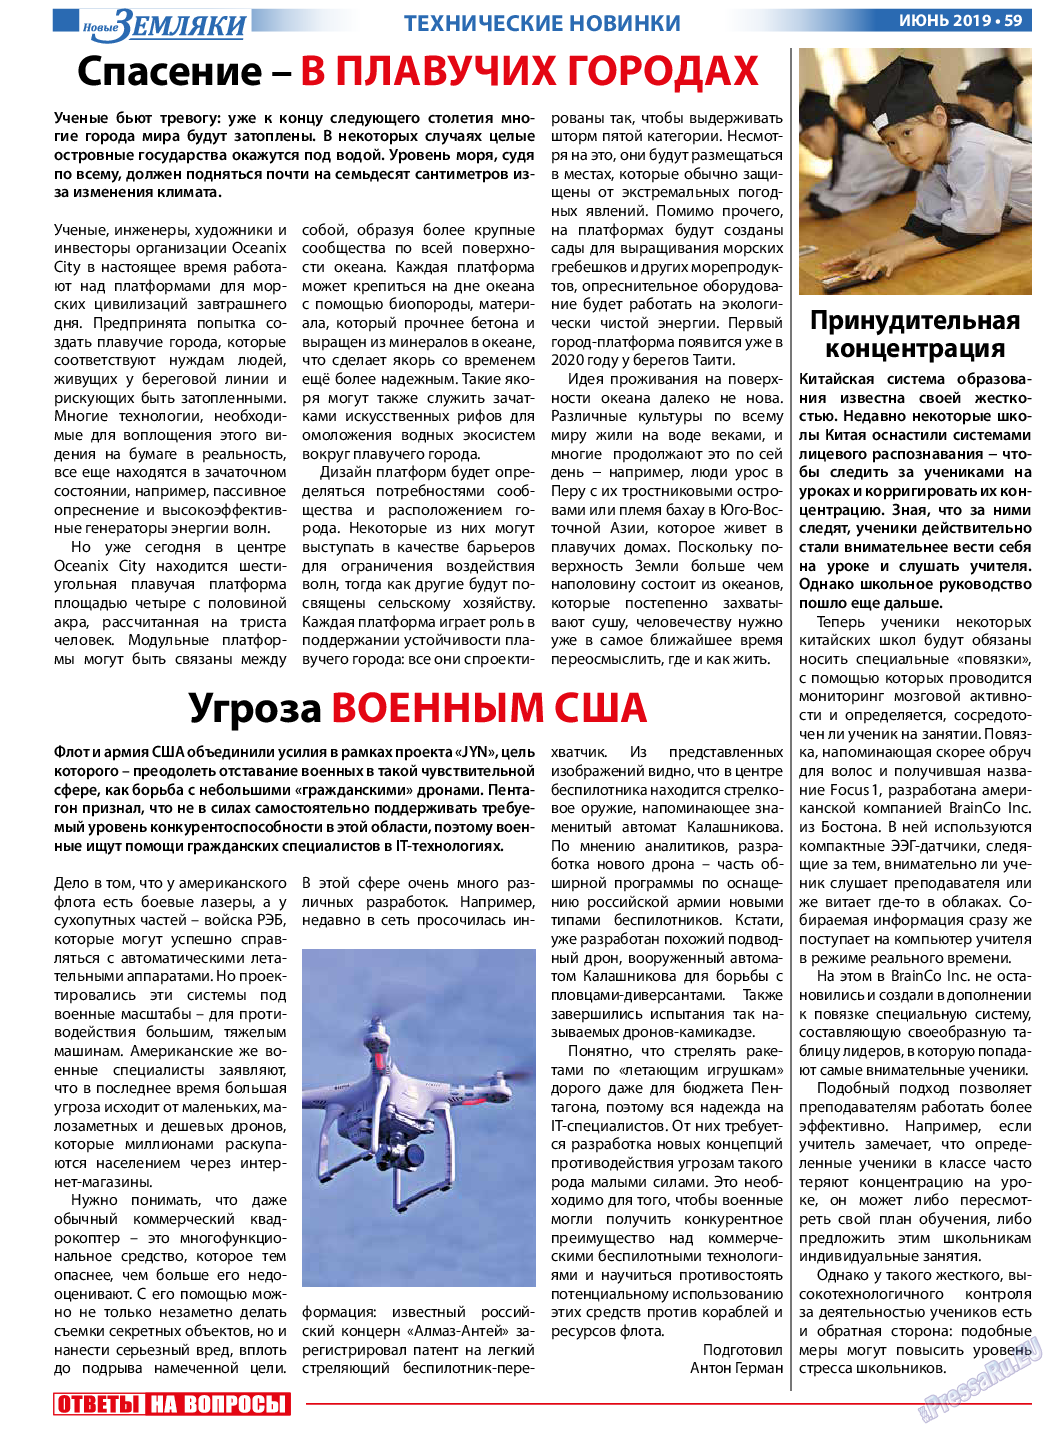 Новые Земляки, газета. 2019 №6 стр.59